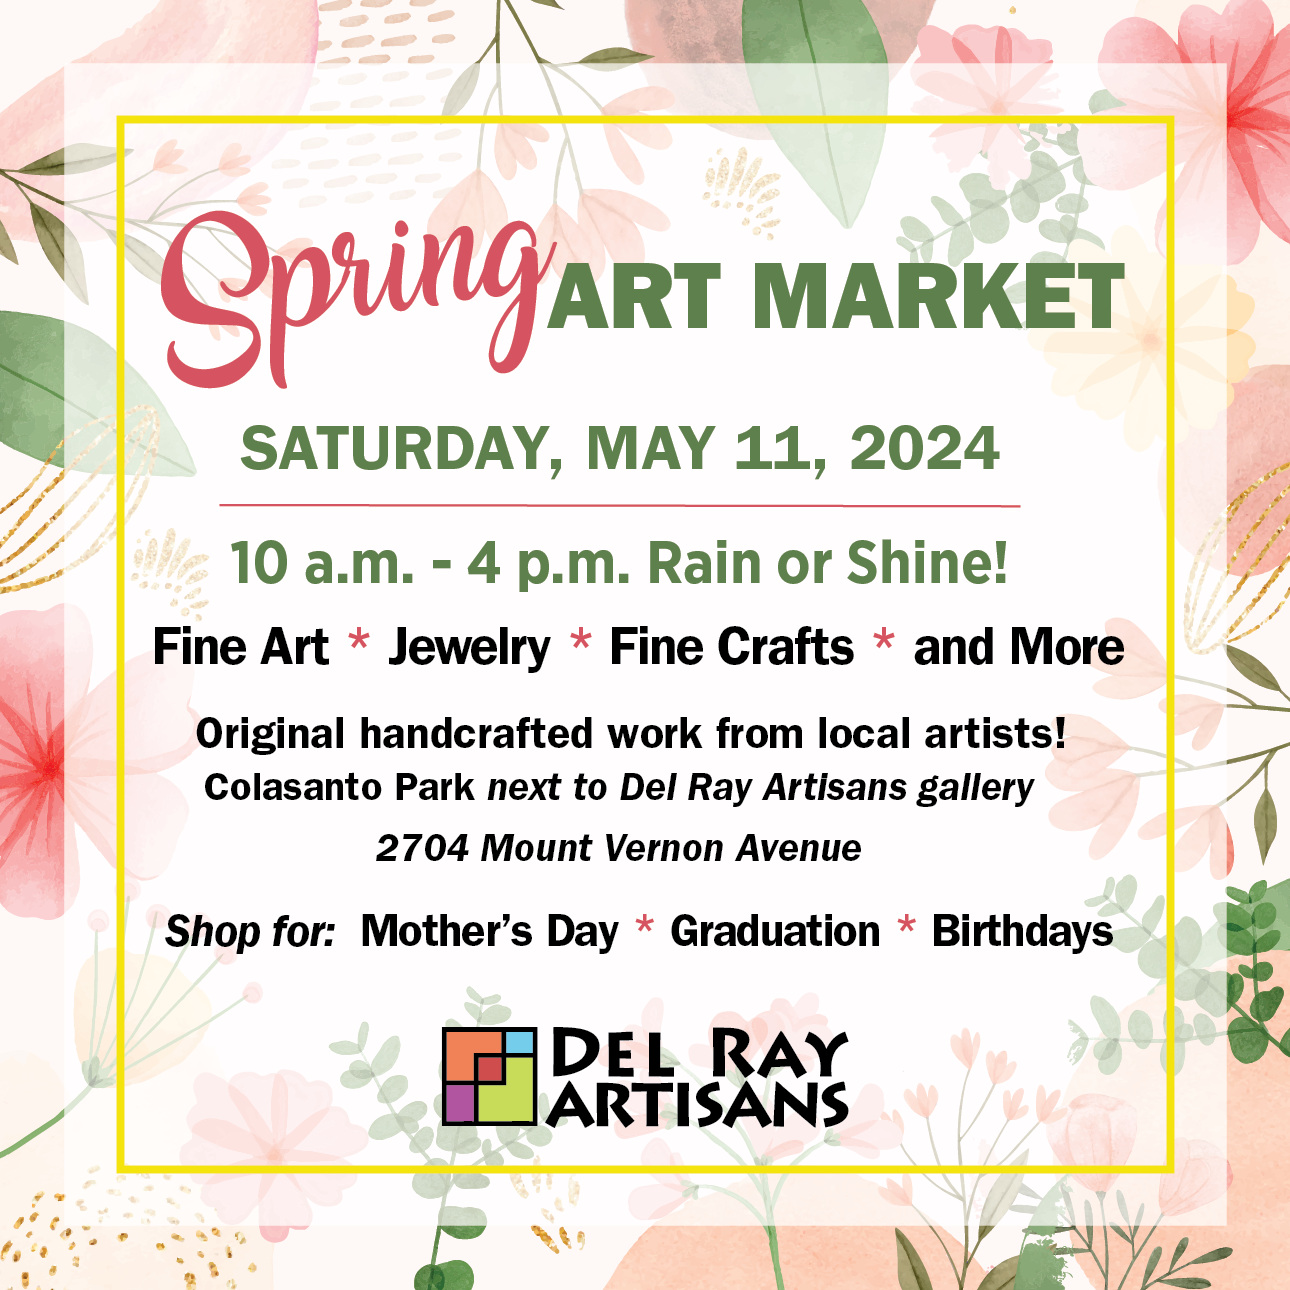 Spring Art Market - Saturday, May 11, 2024